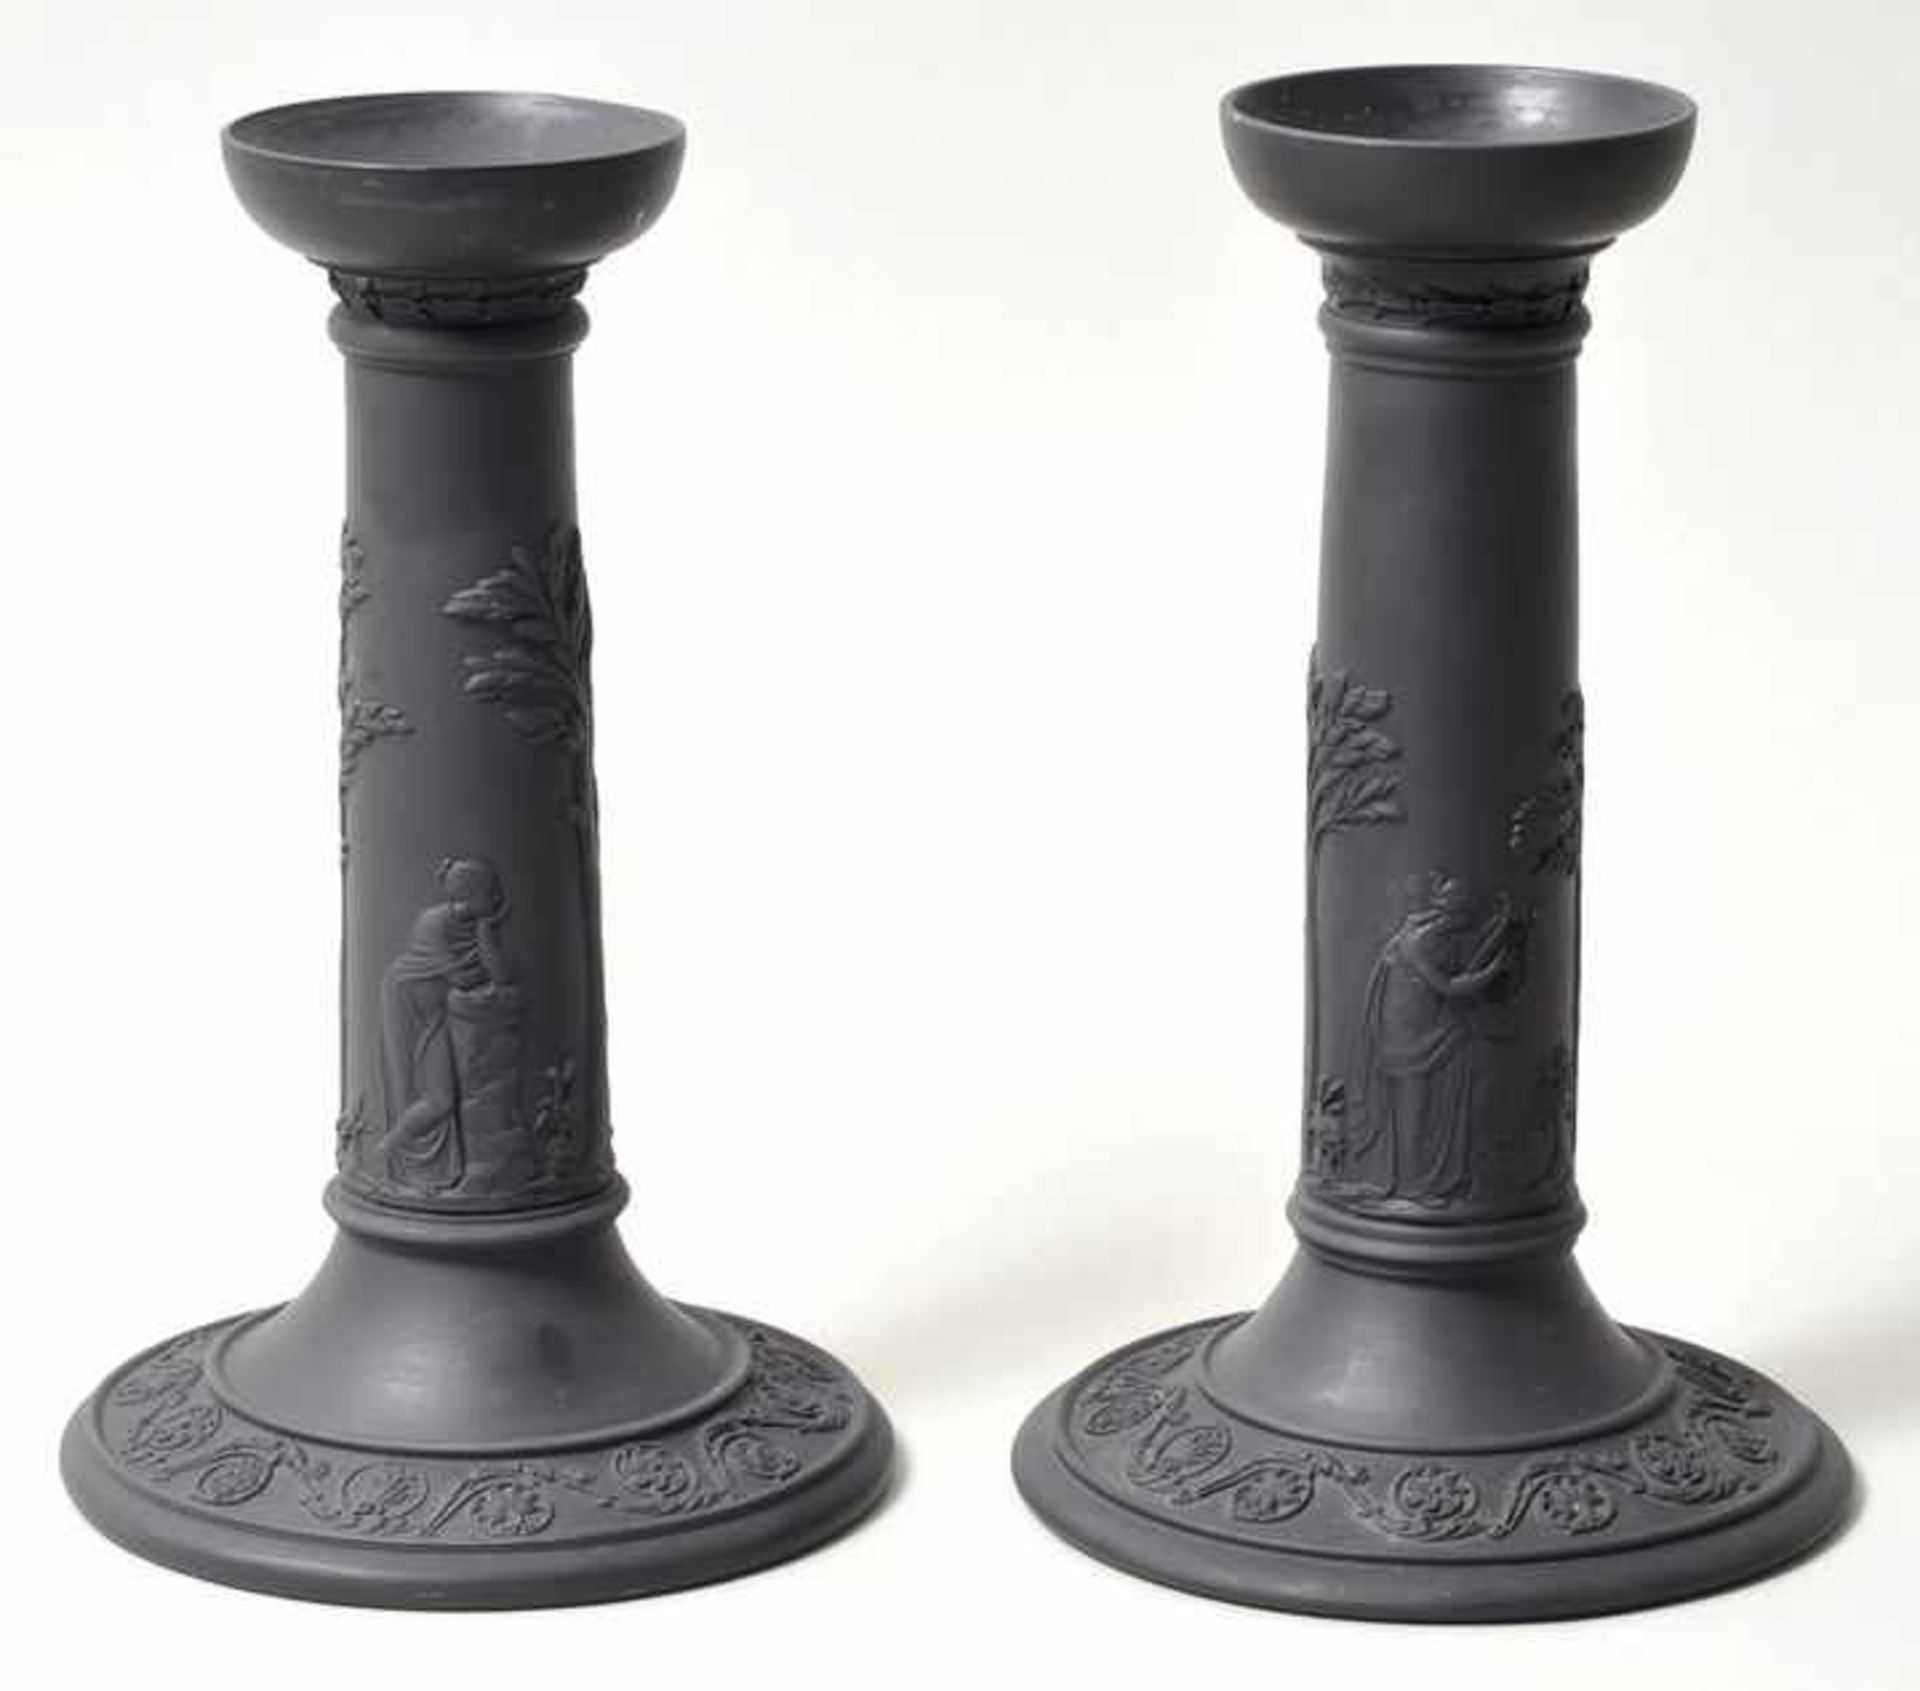 Paar Leuchter, Etruria, Wedgwood, nach 1898.Sog. Black Basalt Ware. Schwarzes Feinsteinzeug mit - Bild 2 aus 3